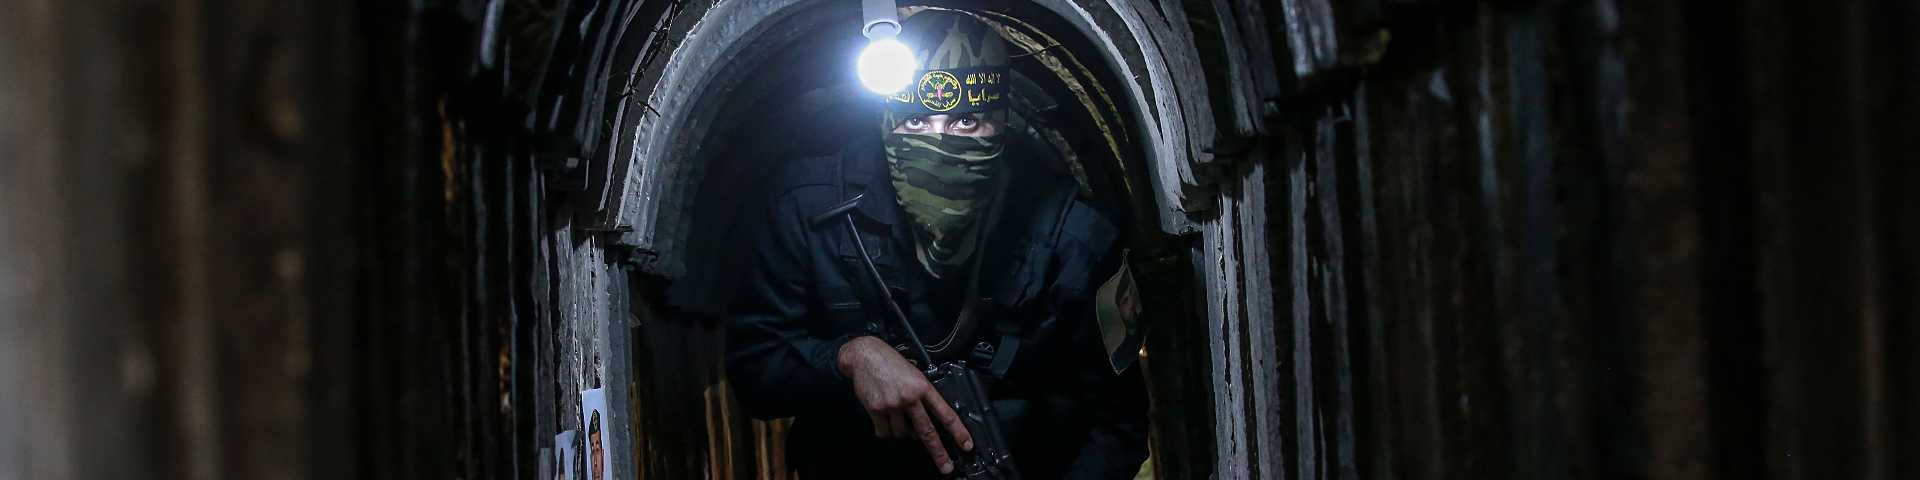 Мрежа тунела испод Појаса Газе: Подземни рат између Израела и Хамаса у метроу страха